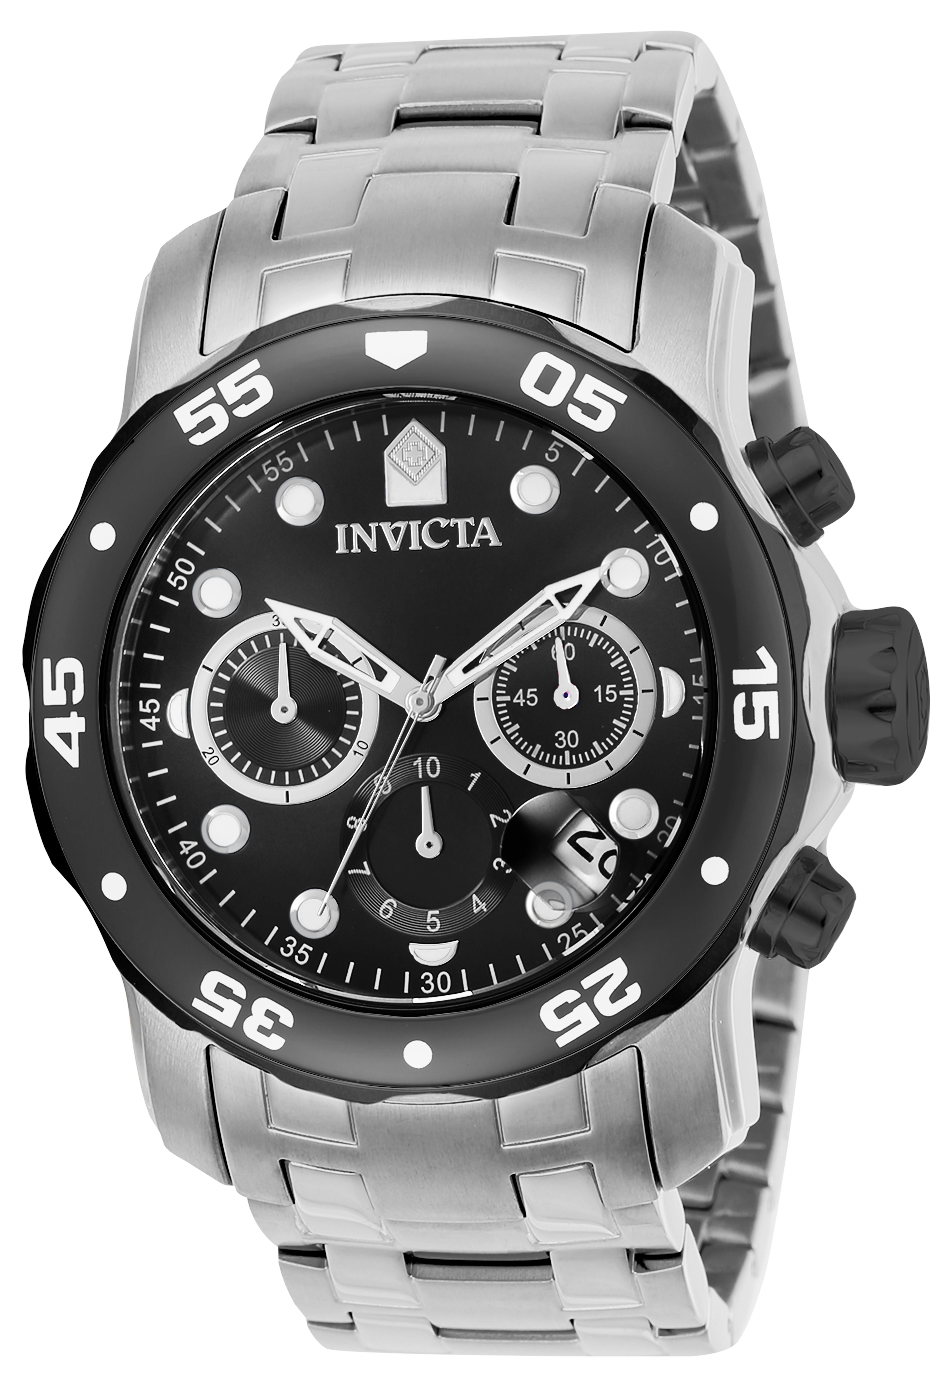 Invicta Pro Diver SCUBA Men's Watch - 48mm, Steel (17083)